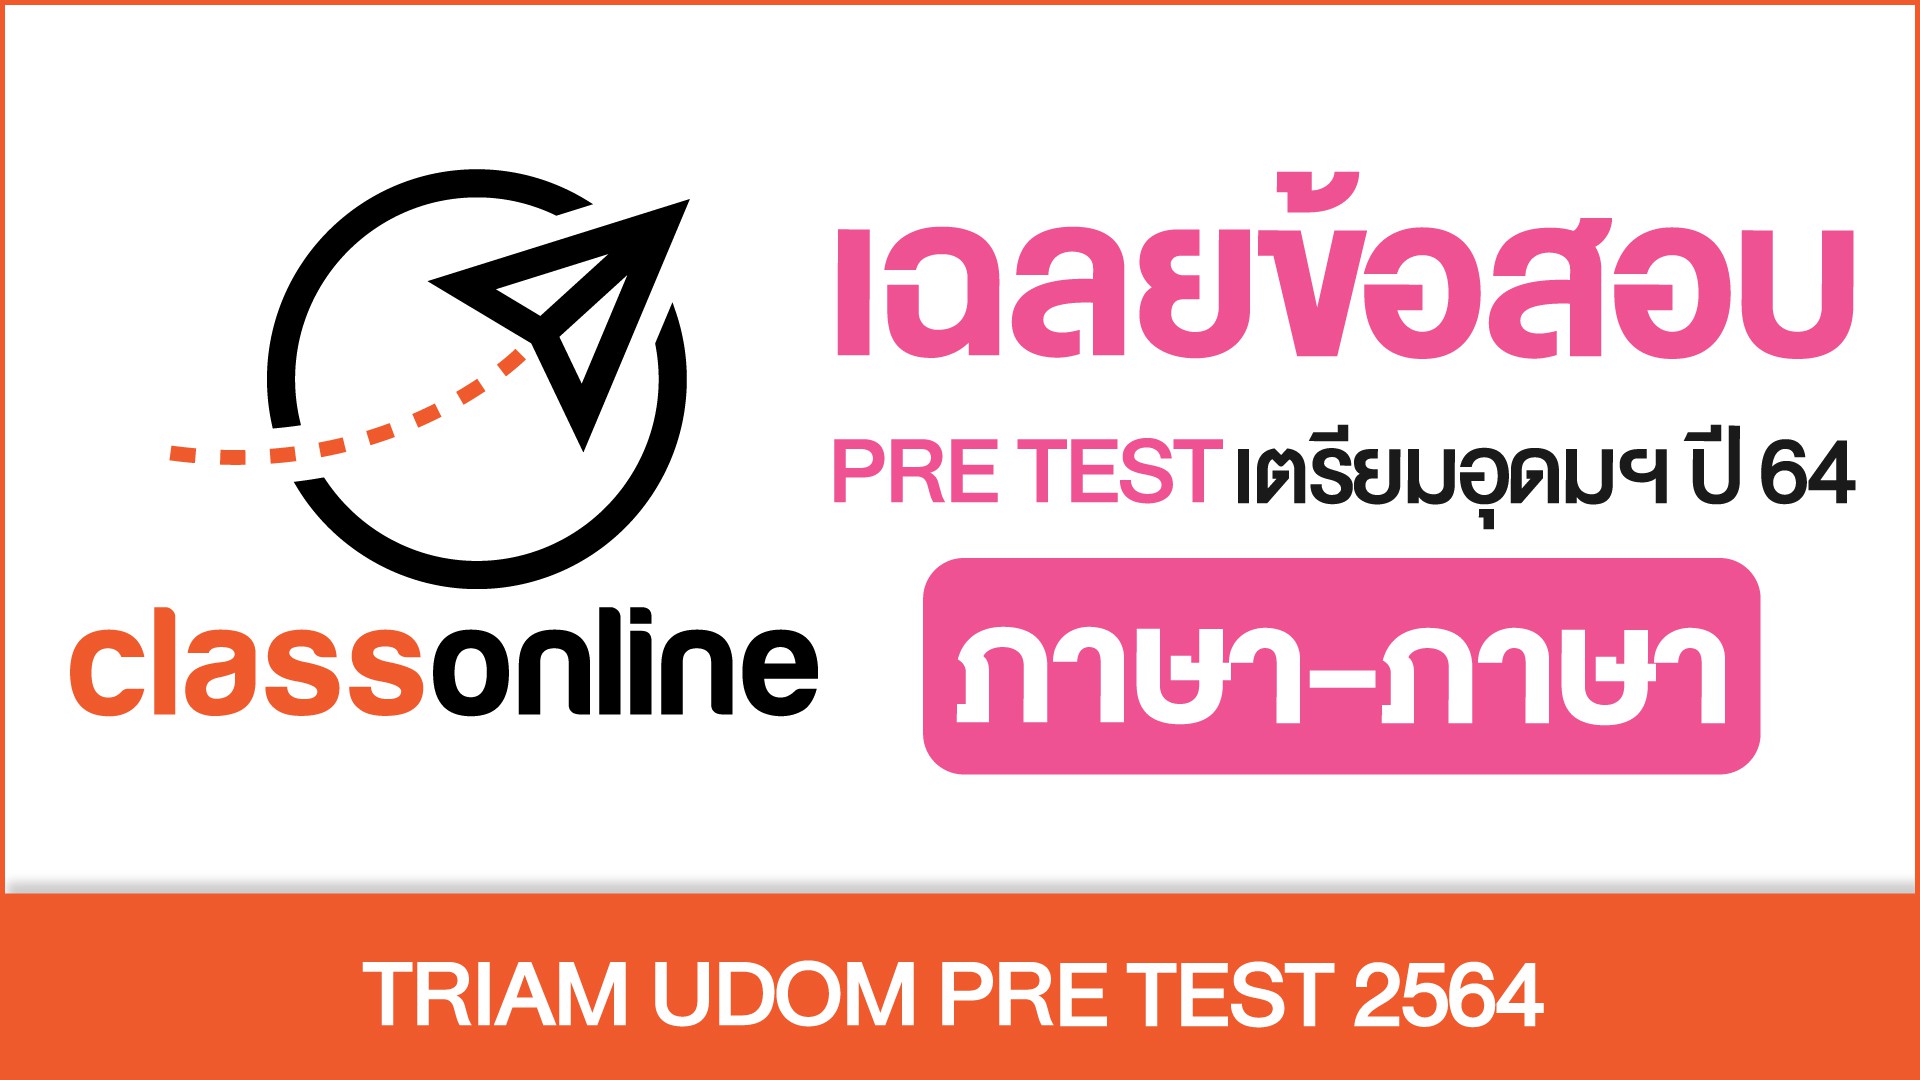 TRIAM UDOM PRE TEST 2564 สายภาษา-ภาษา